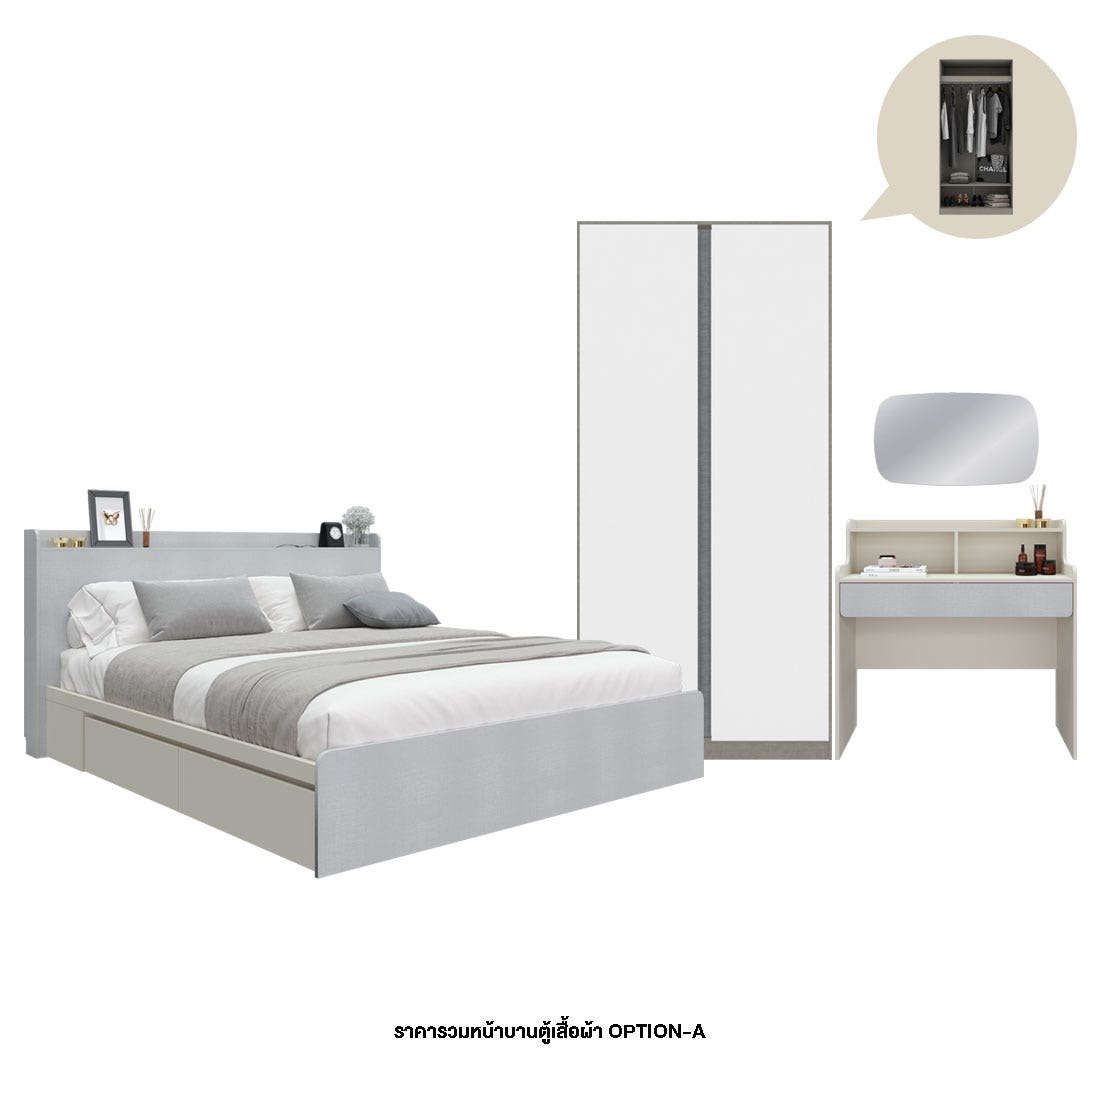 ชุดห้องนอน 5 ฟุต & ตู้ Blox Option A 100 ซม. & โต๊ะเครื่องแป้ง และกระจกรุ่น Aiko สีขาว01